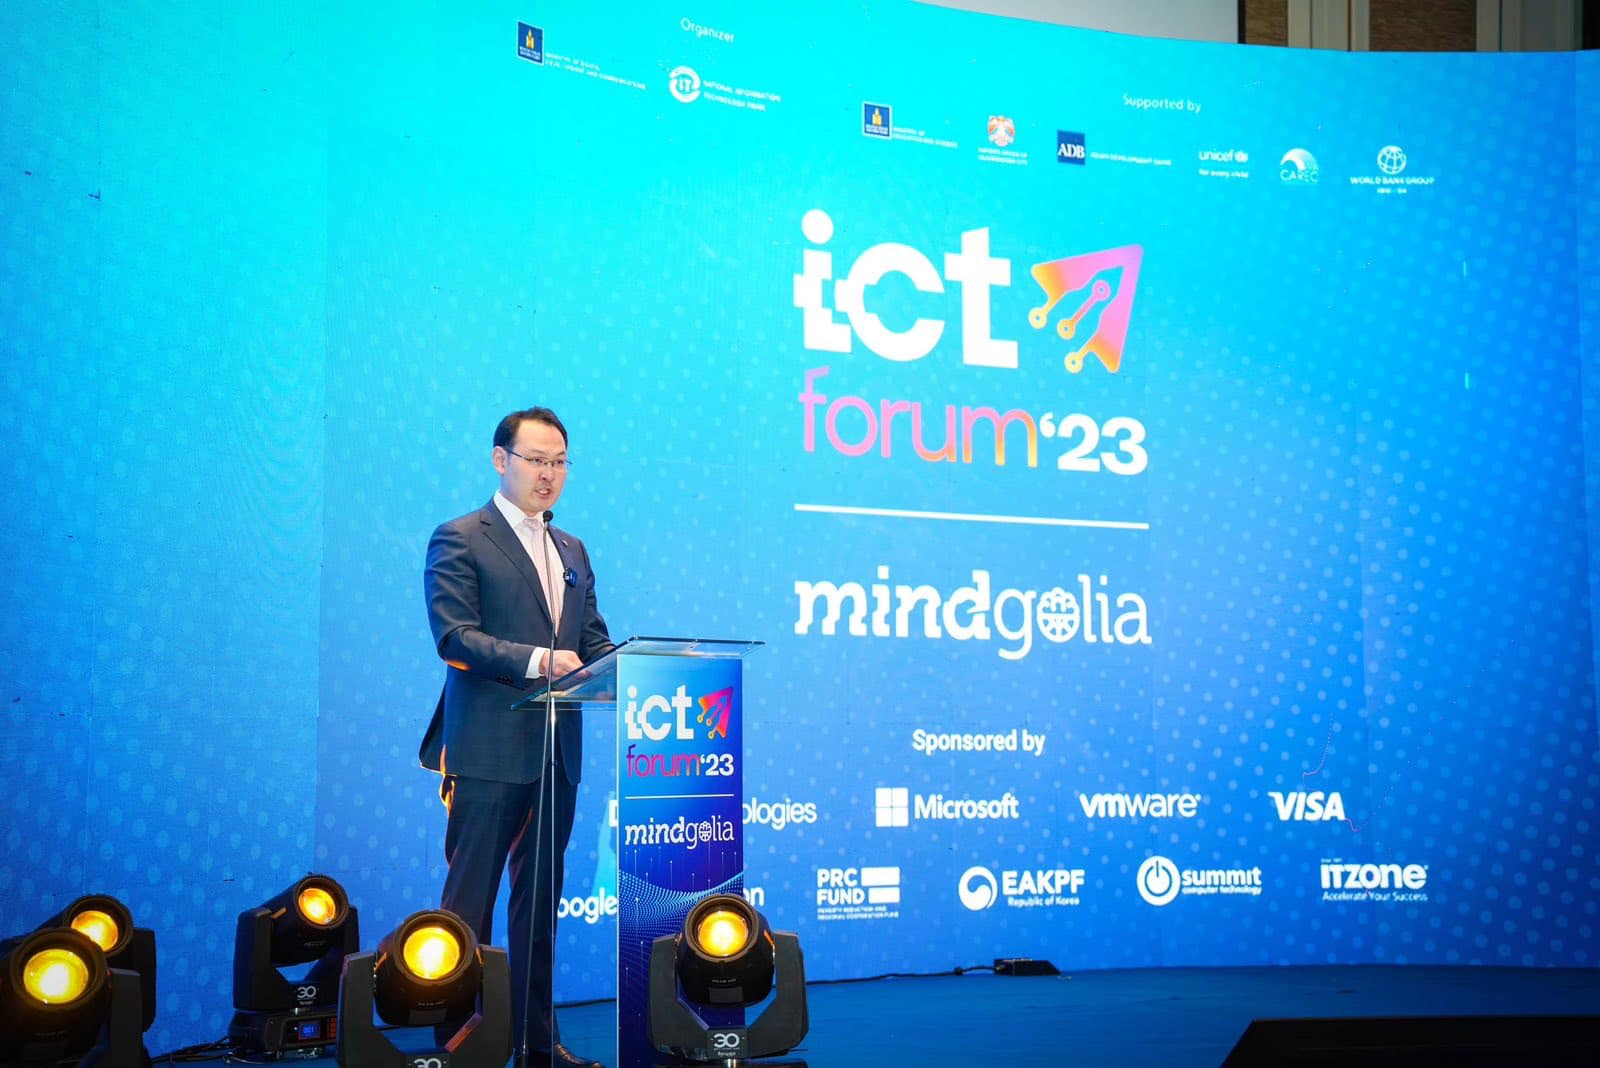 Мэдлэгт суурилсан эдийн засгийг бүтээх "ICT FORUM" эхэллээ